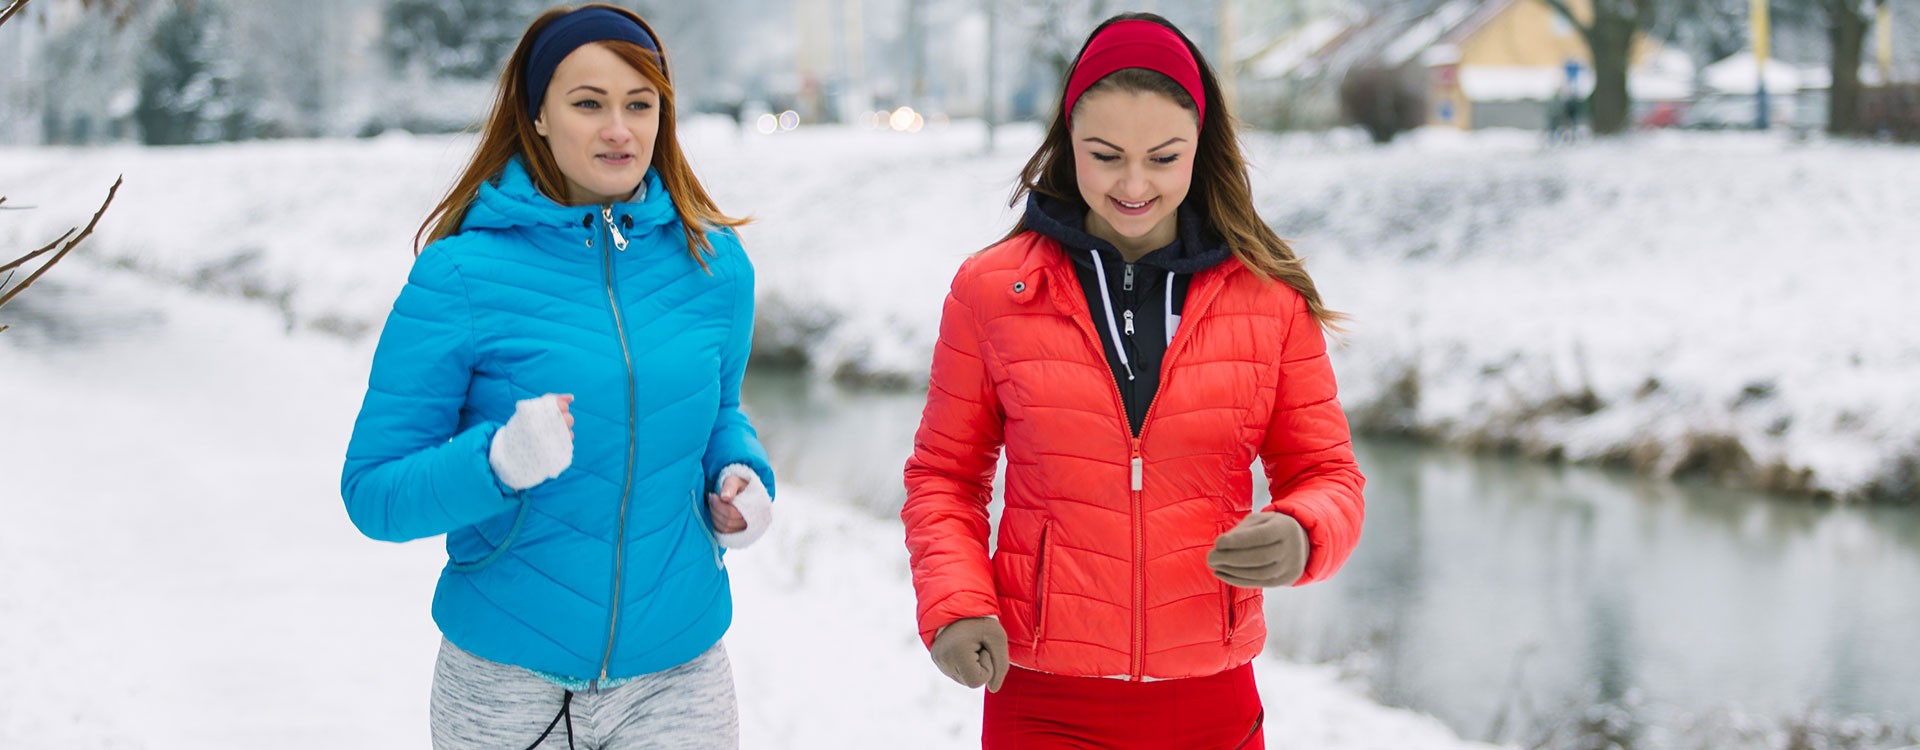 ¿Es bueno hacer ejercicio cuando hace frío?